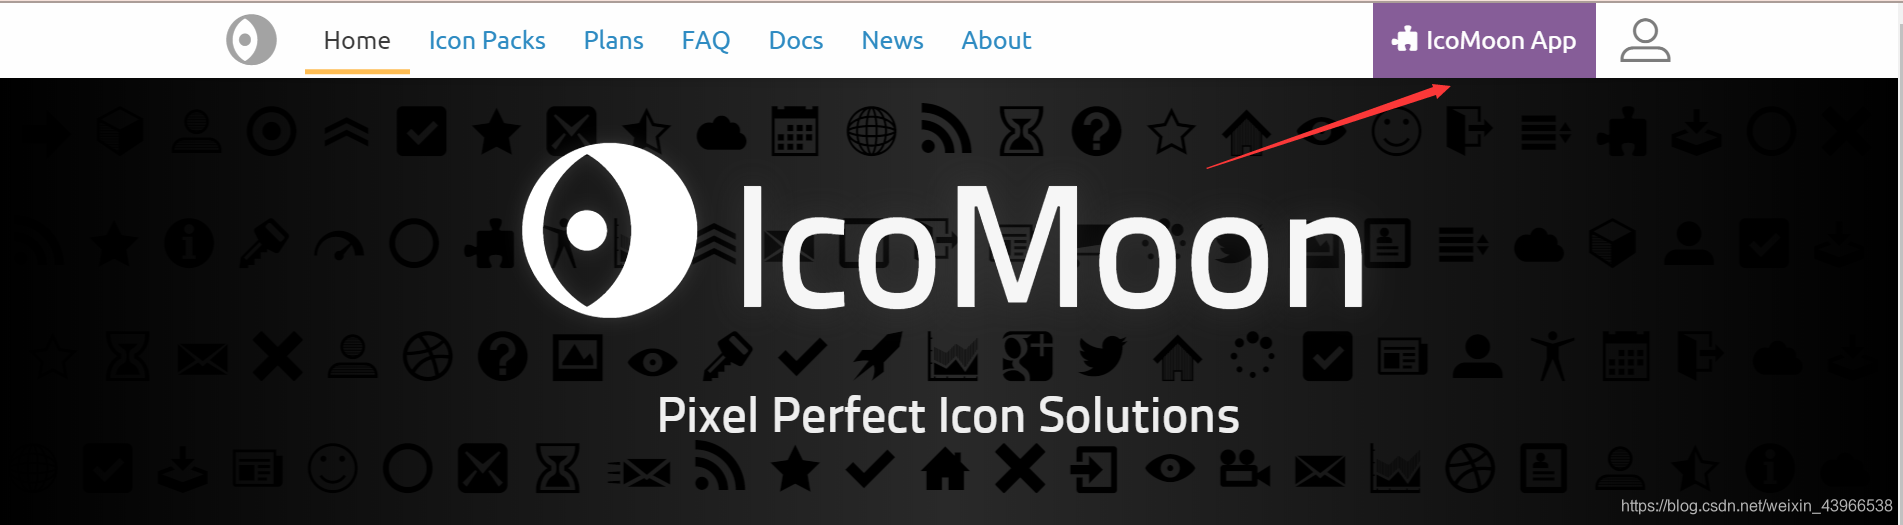 IcoMoon App